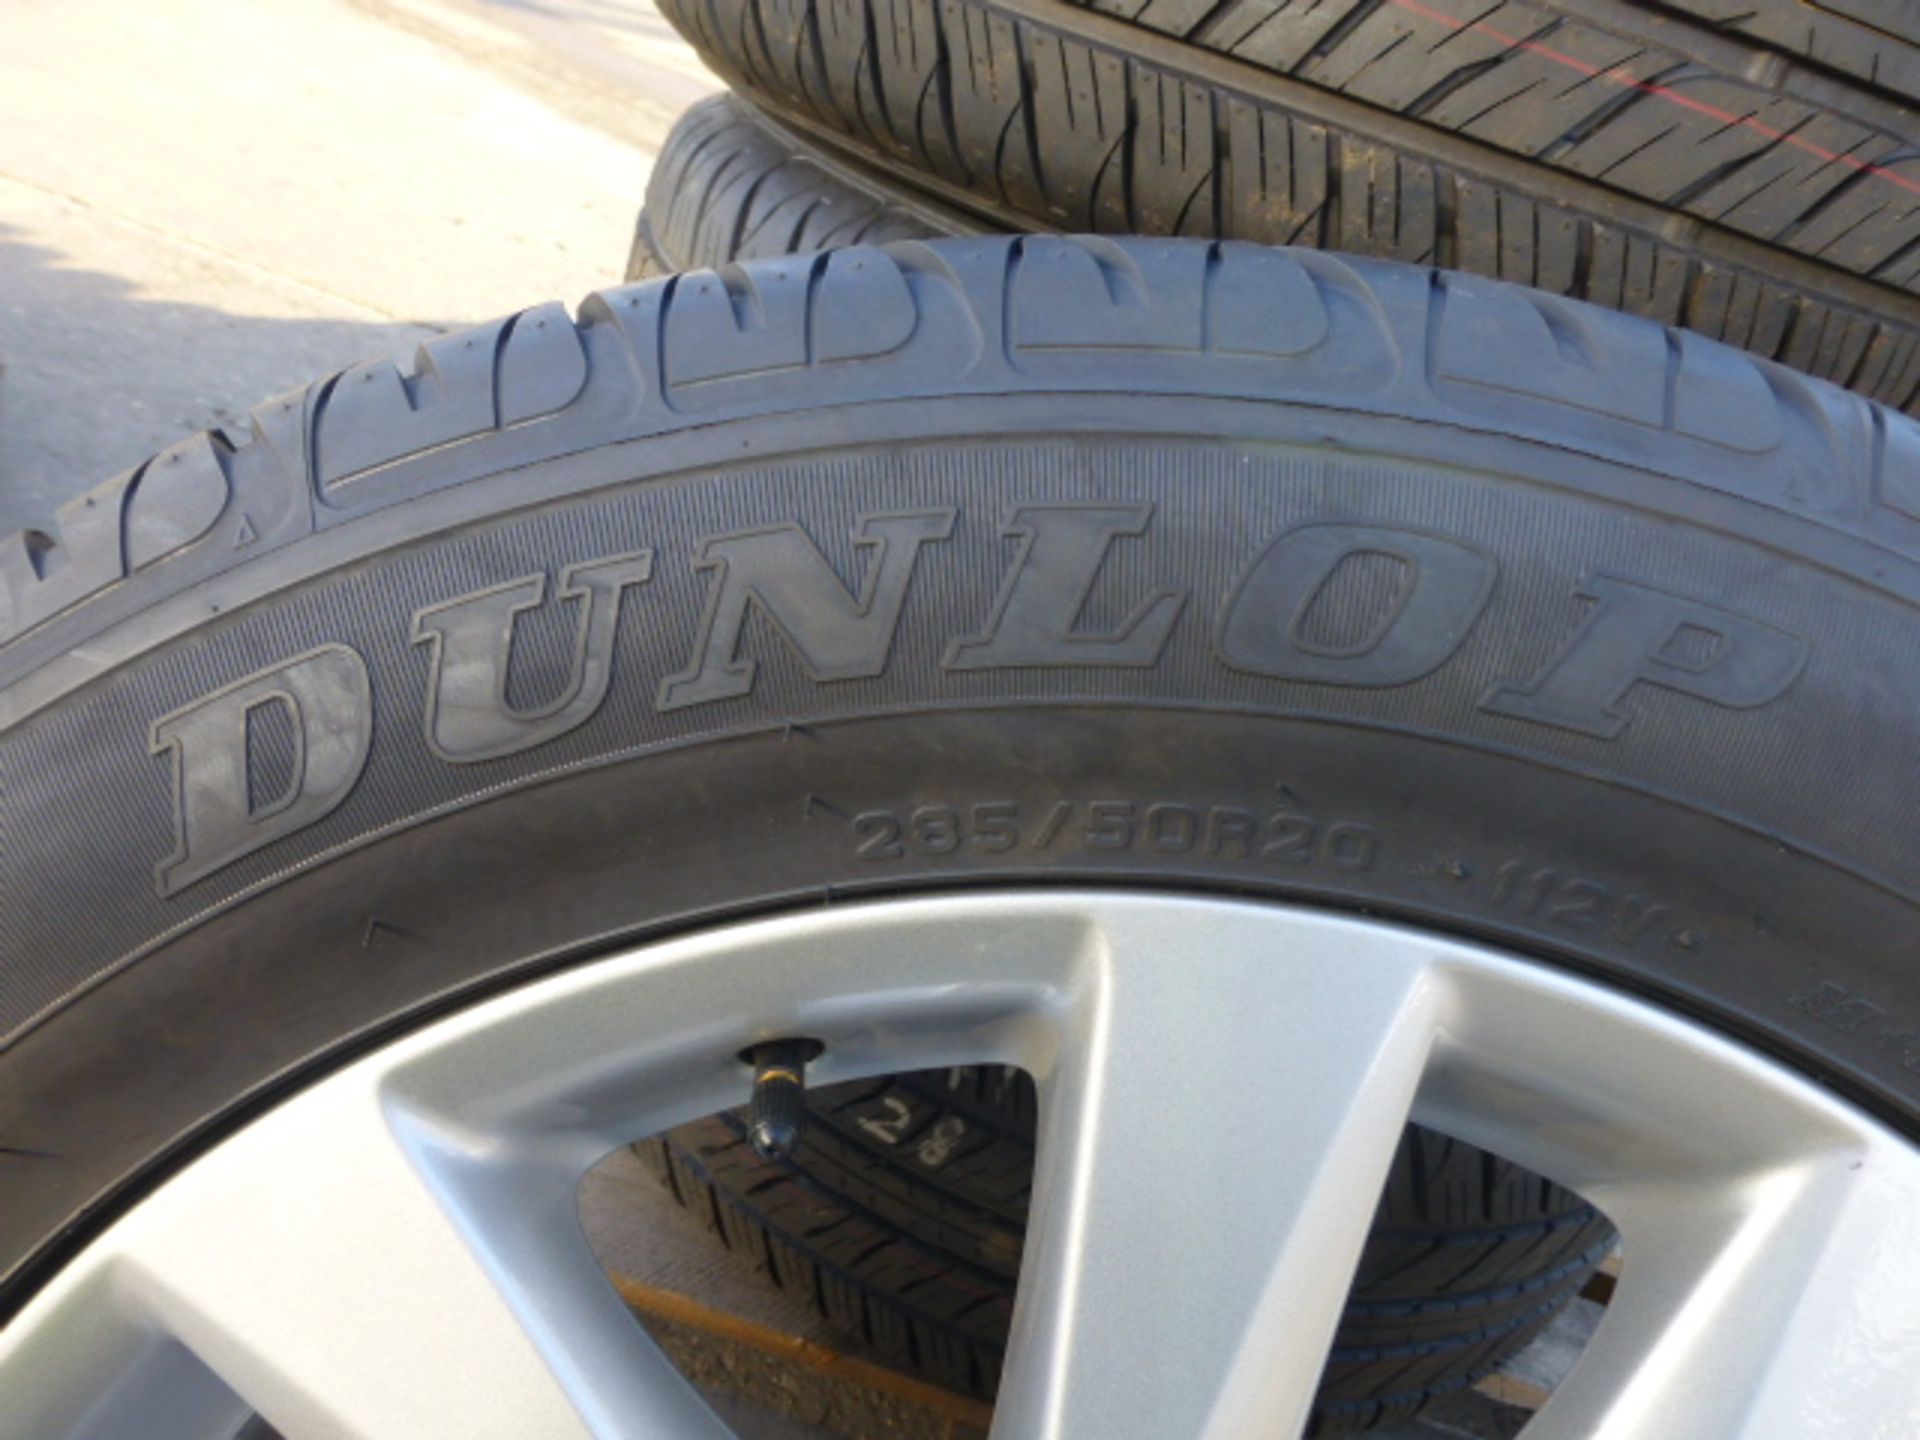 4 x Dunlop PT2A Grandtrek 285/50R20 Tyres on Land Cruiser V8 Rims - Image 2 of 6